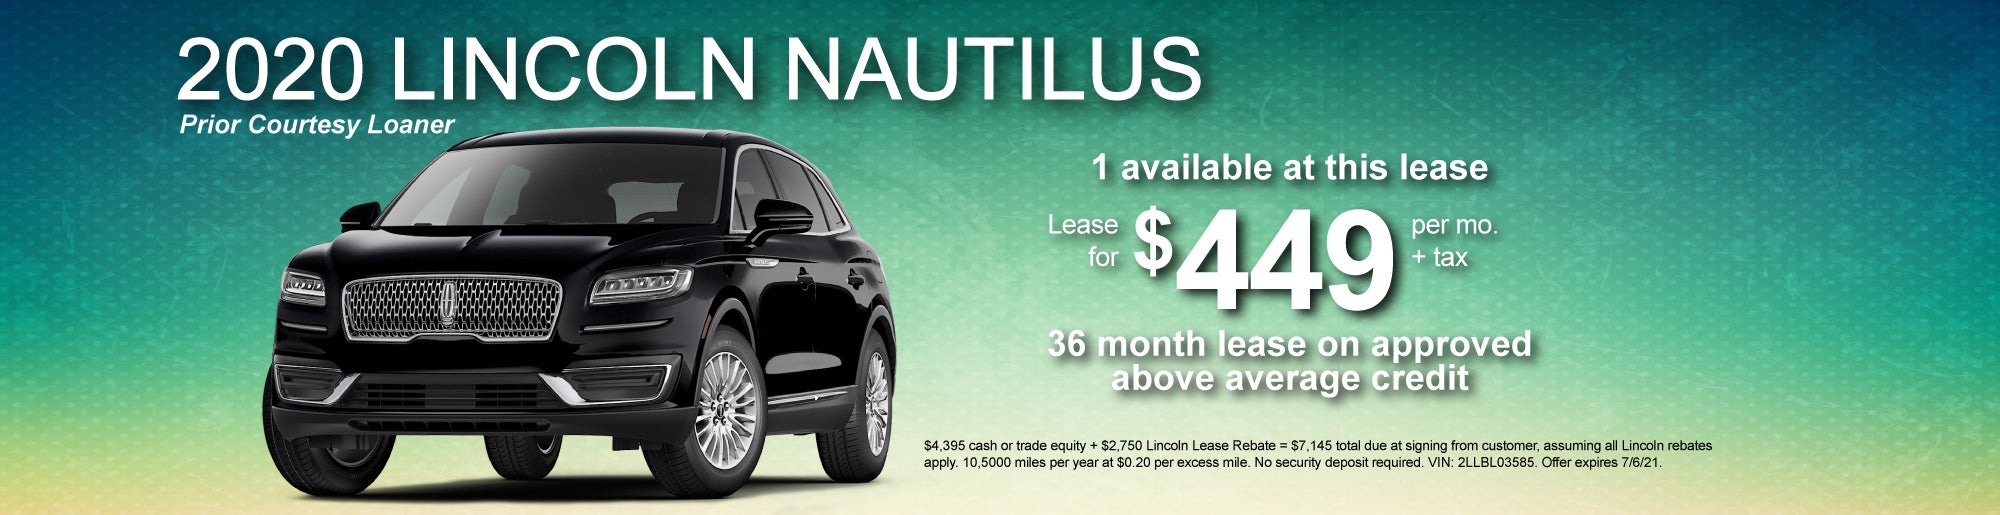 Lease a 2020 Nautilus for $449/mo + tax